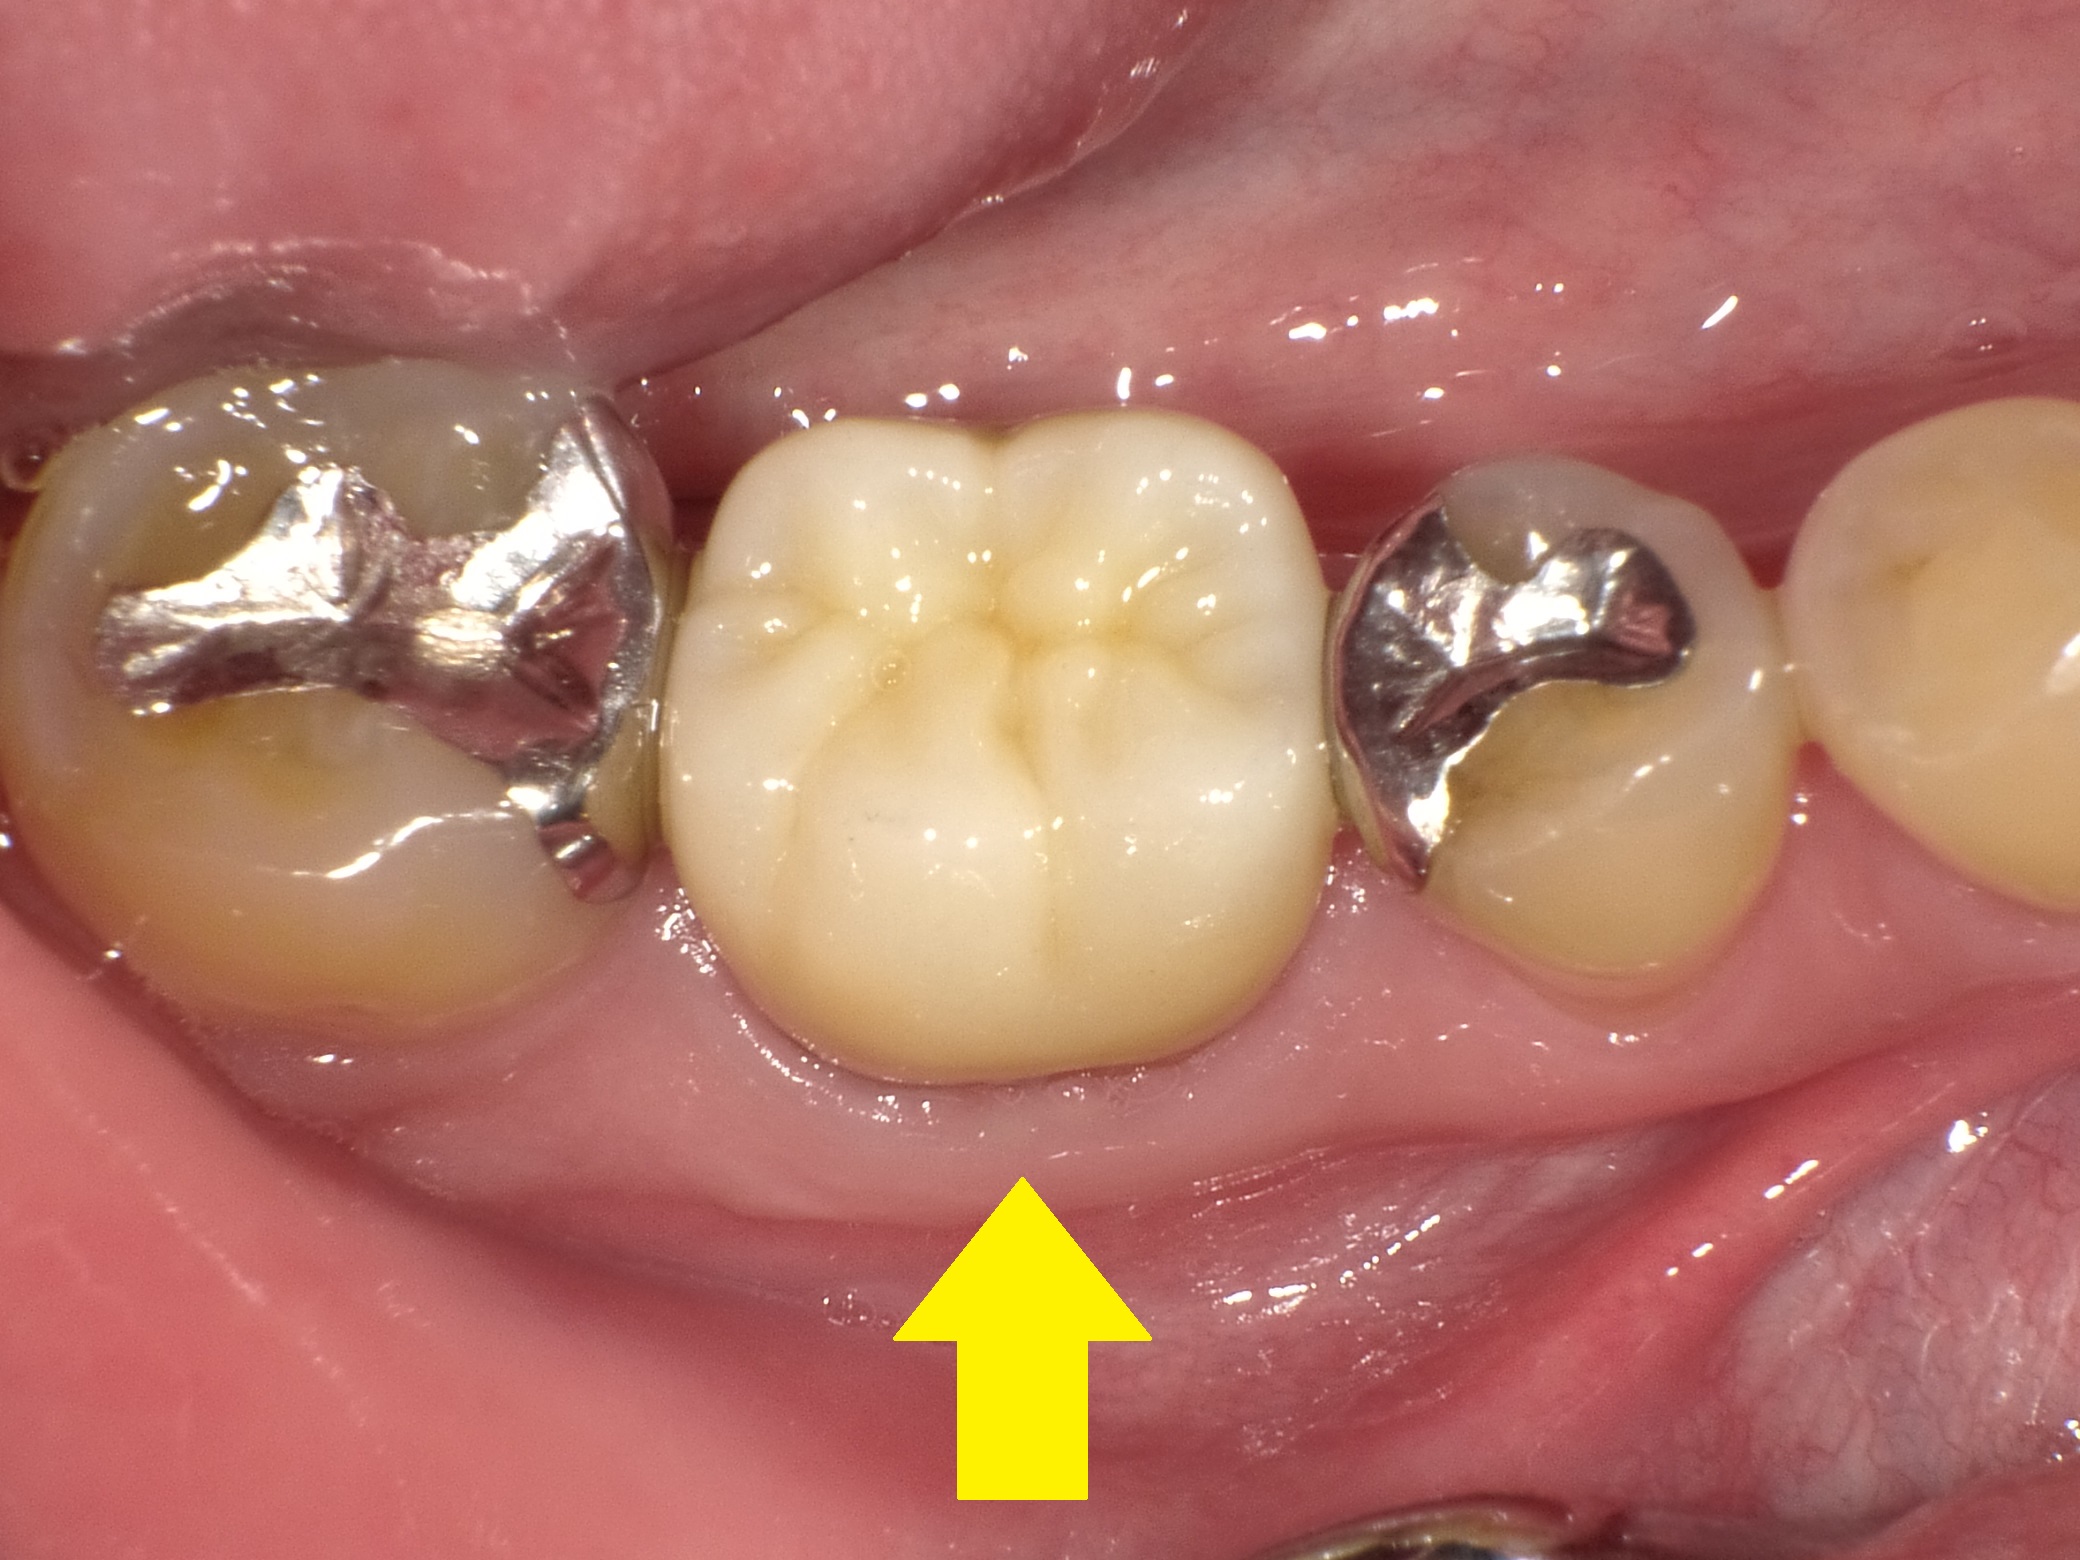 【精密根管治療経過報告】続・歯ぐきのニキビのような腫れを治したい。